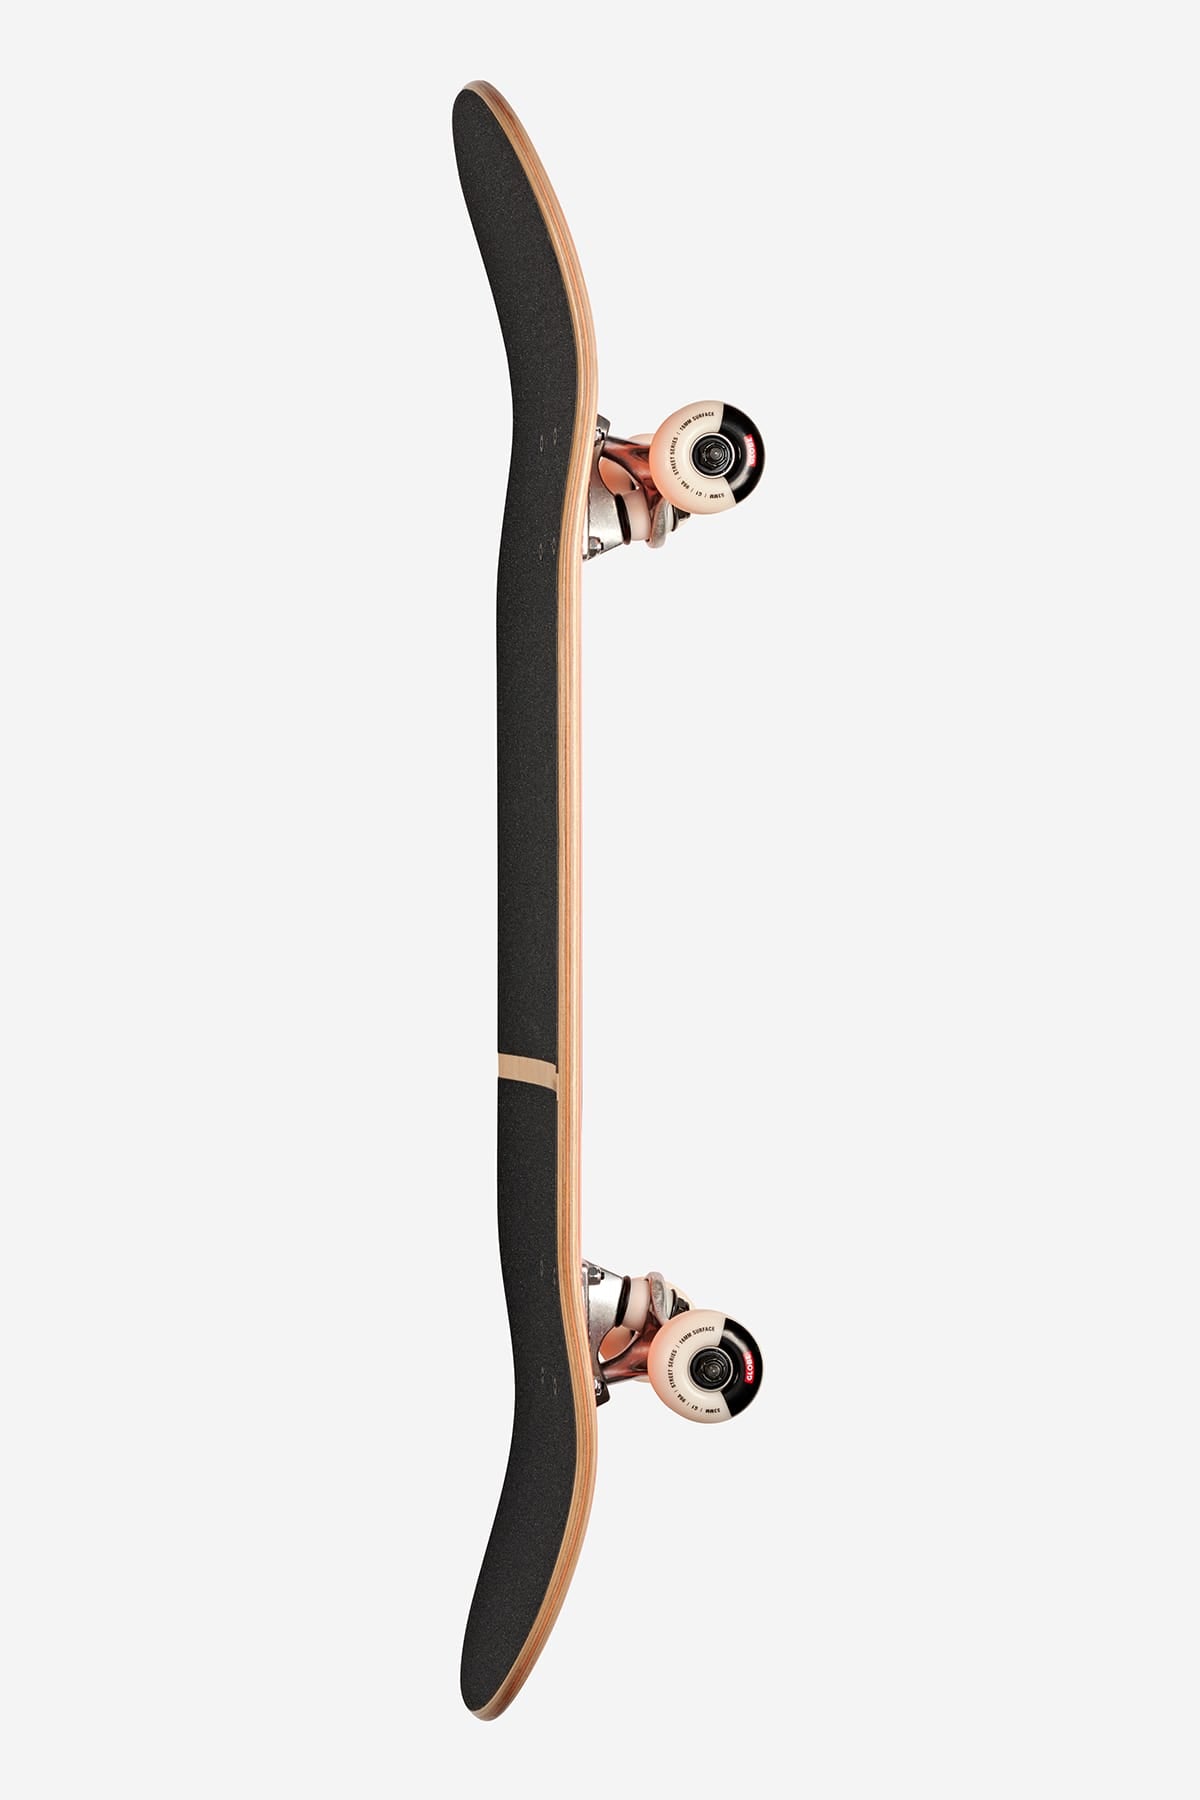 g1 digital nurture komplett skateboard maschine gemacht mann